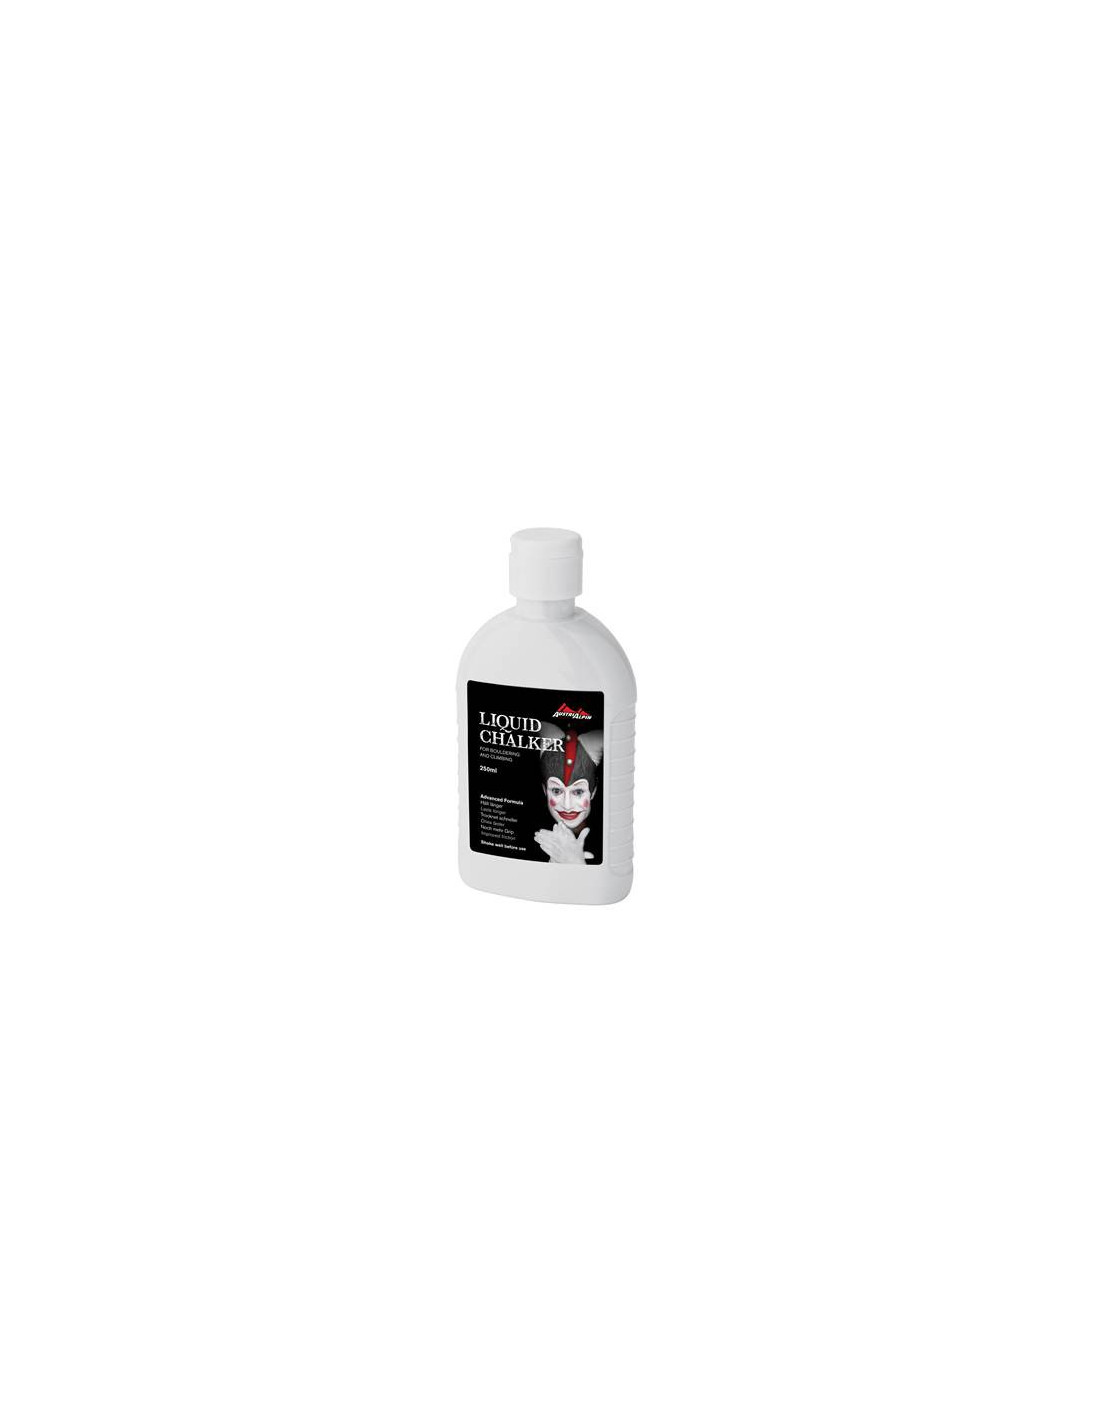 AustriAlpin Liquid Chalk 250ml Chalkvariante - Liquid Chalk, Chalkmenge - 201 - 300 ml, von AustriAlpin